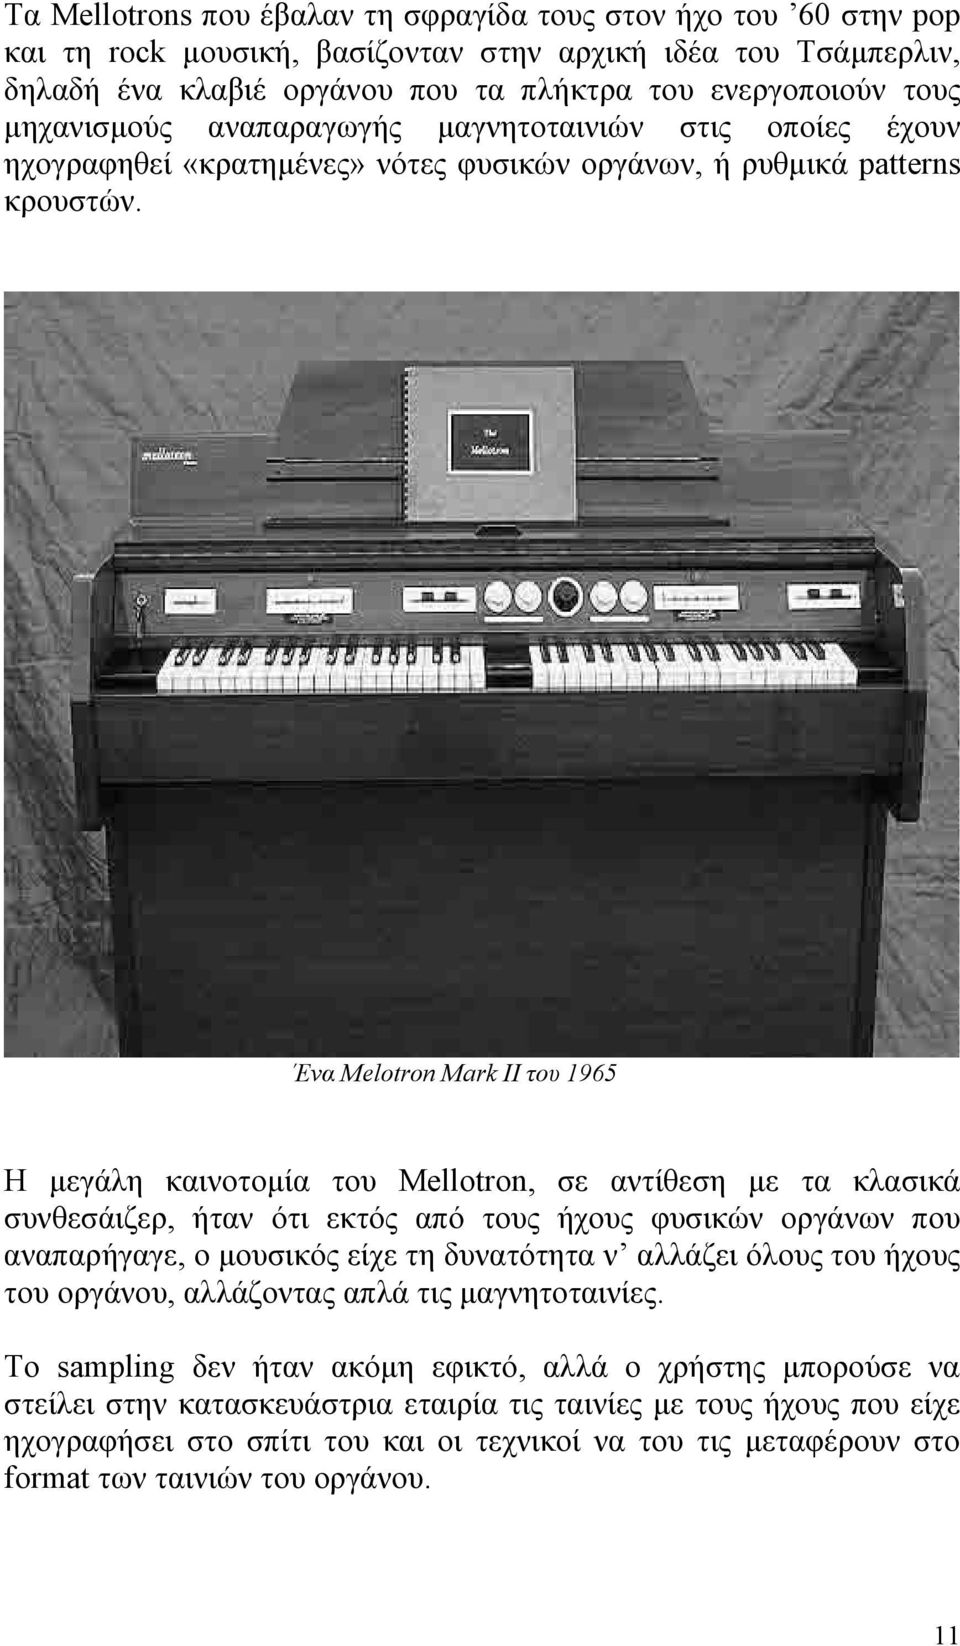 Ένα Melotron Mark II του 1965 Η μεγάλη καινοτομία του Mellotron, σε αντίθεση με τα κλασικά συνθεσάιζερ, ήταν ότι εκτός από τους ήχους φυσικών οργάνων που αναπαρήγαγε, ο μουσικός είχε τη δυνατότητα ν